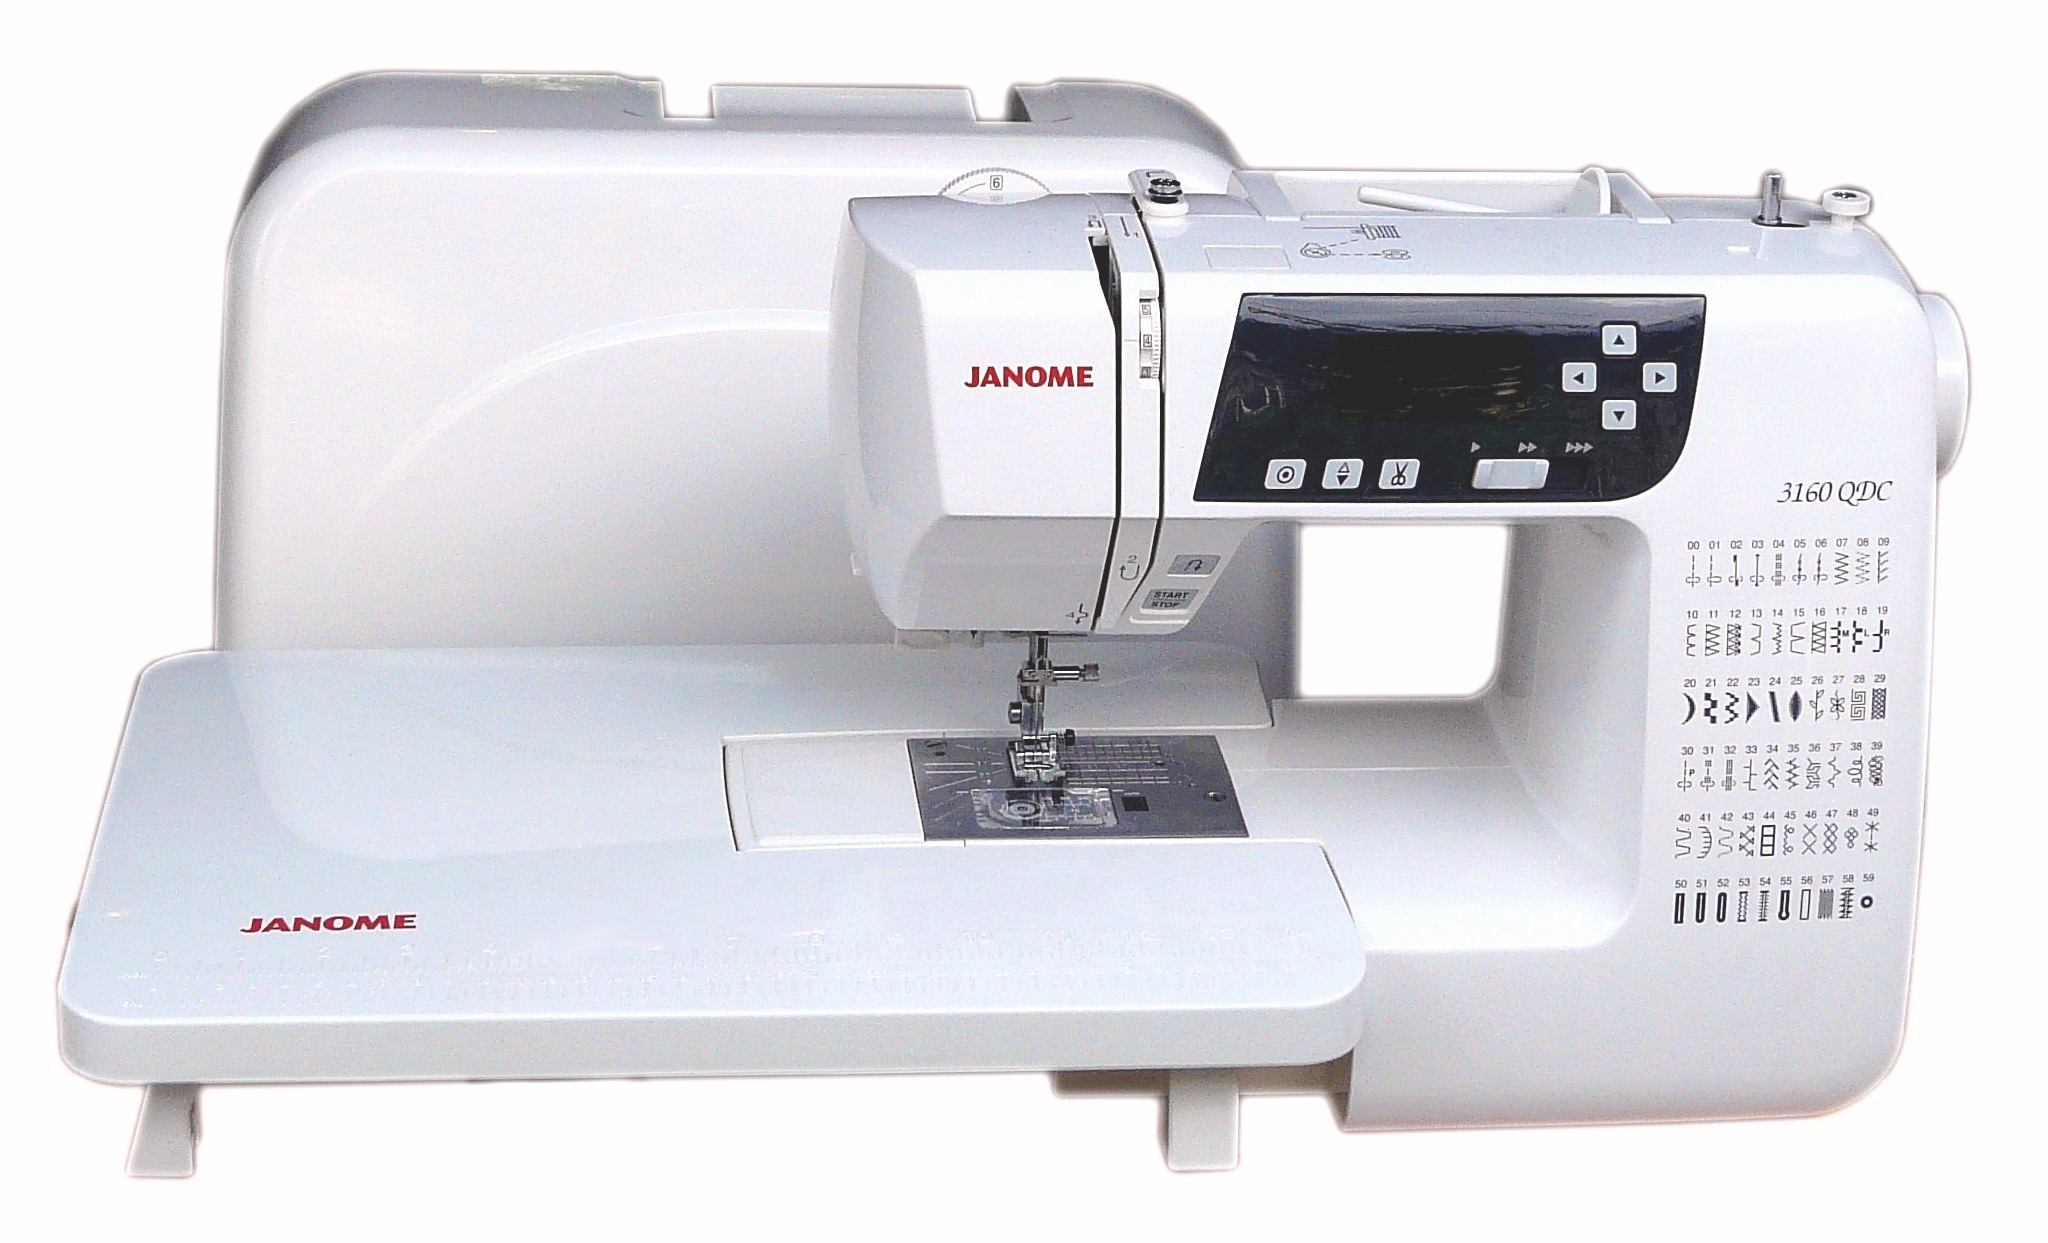 Компьютеризированная швейная машинка Janome 3160 QDC